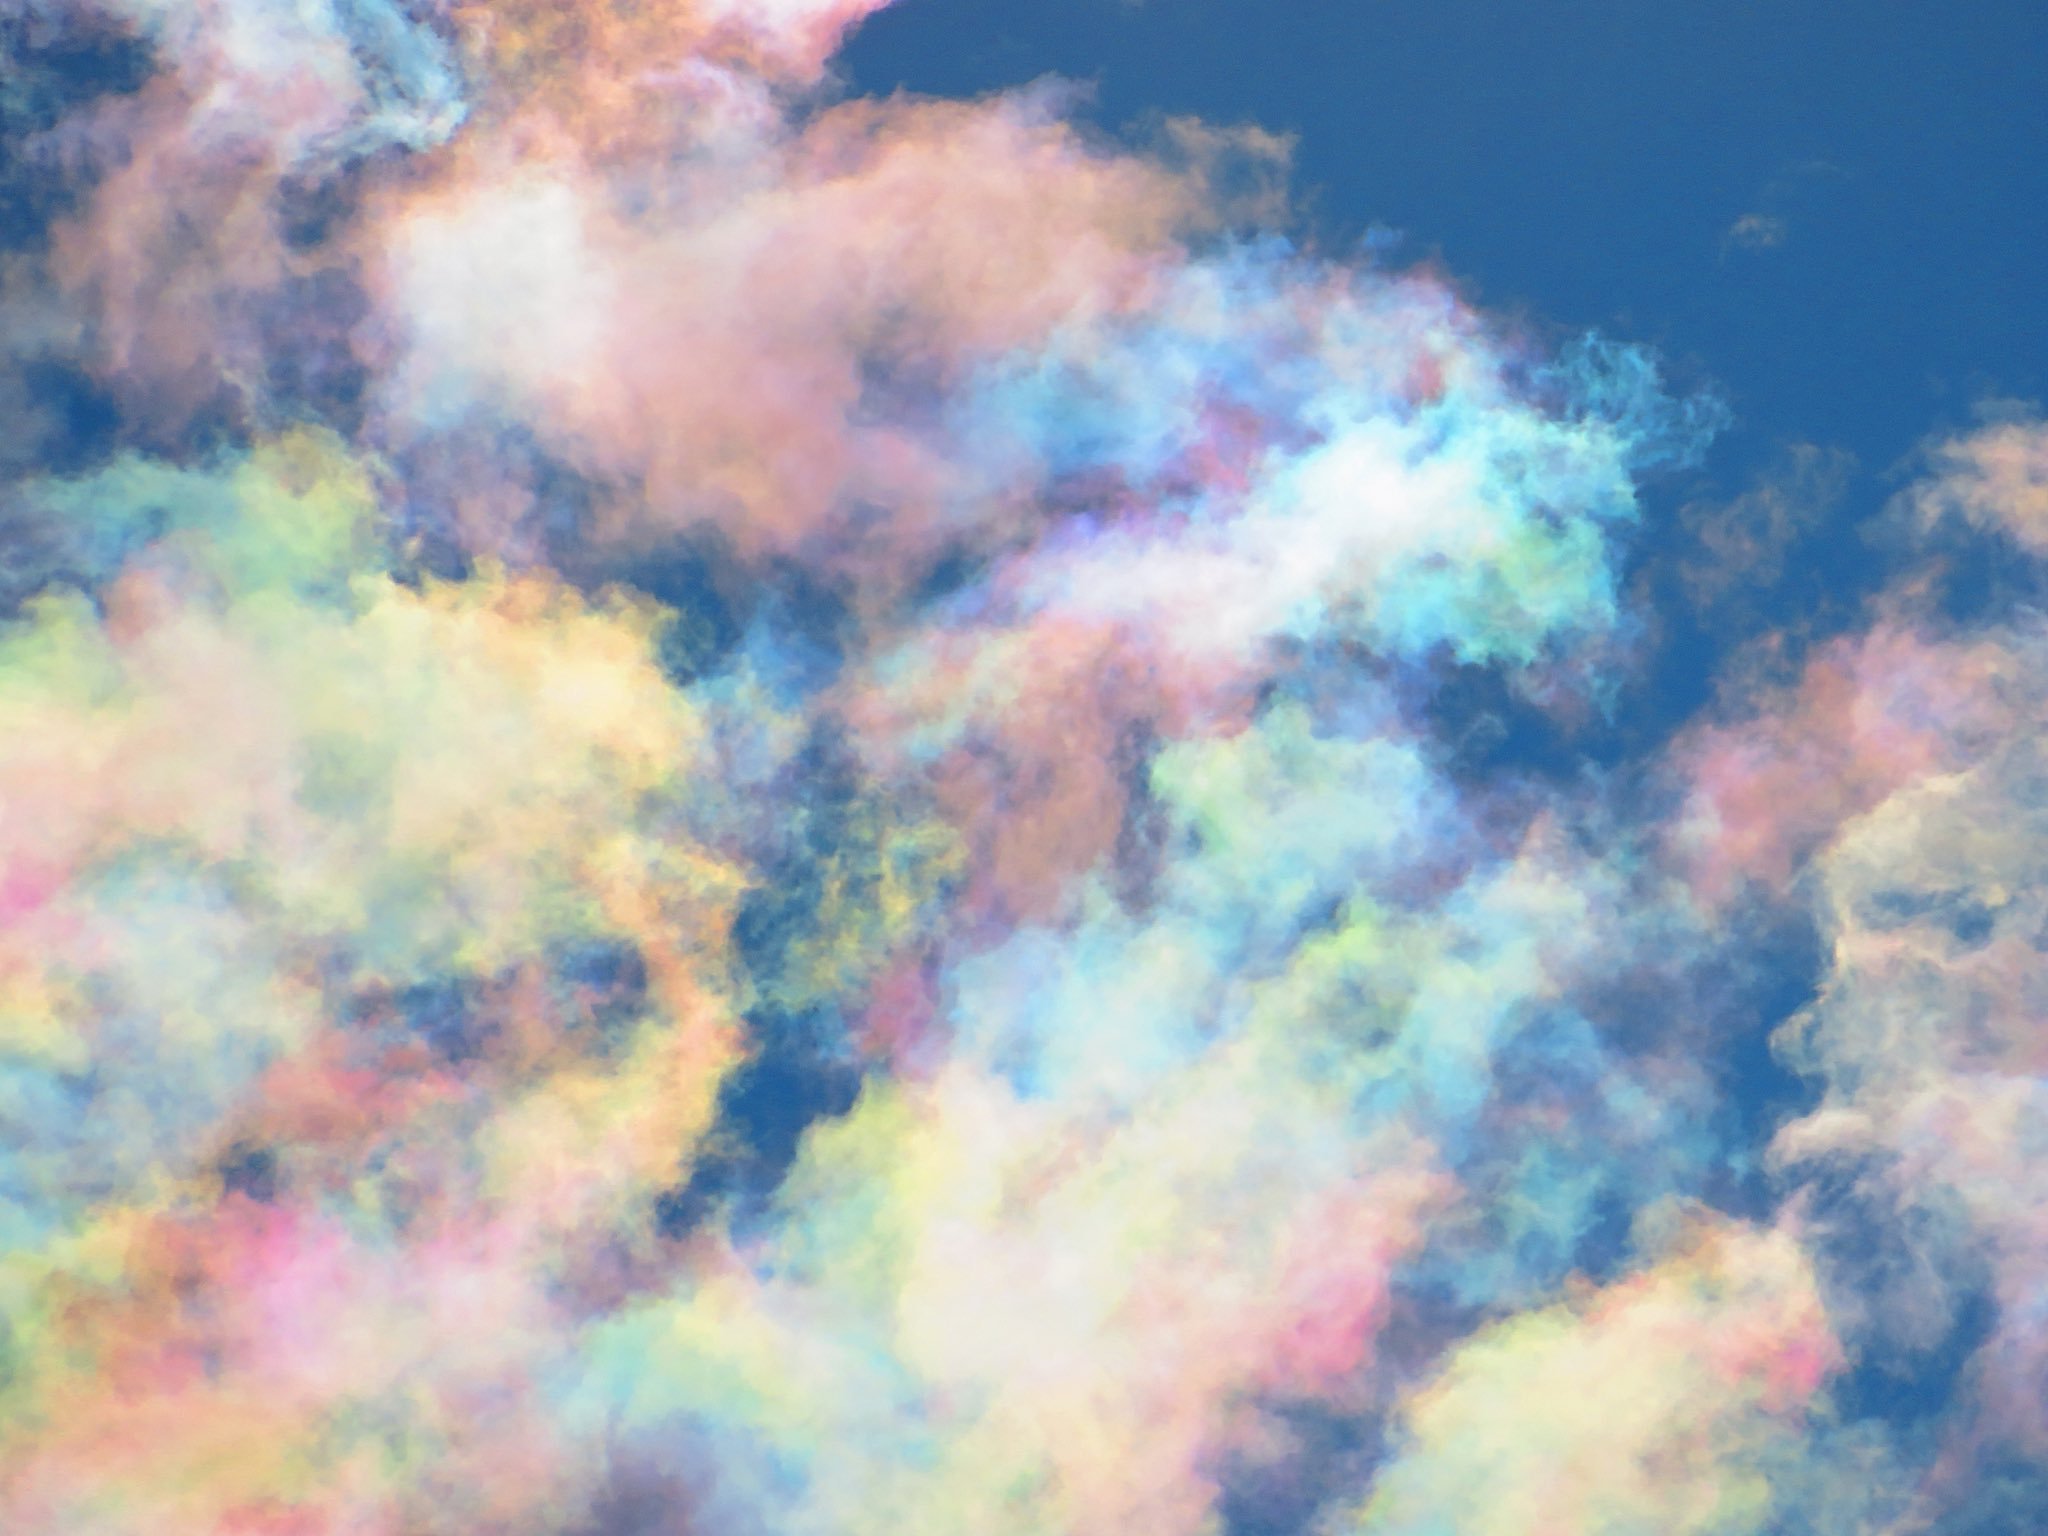 空 なんとも美しい 彩雲 を発見 こんな綺麗なものが自然に発生するのか Break Time